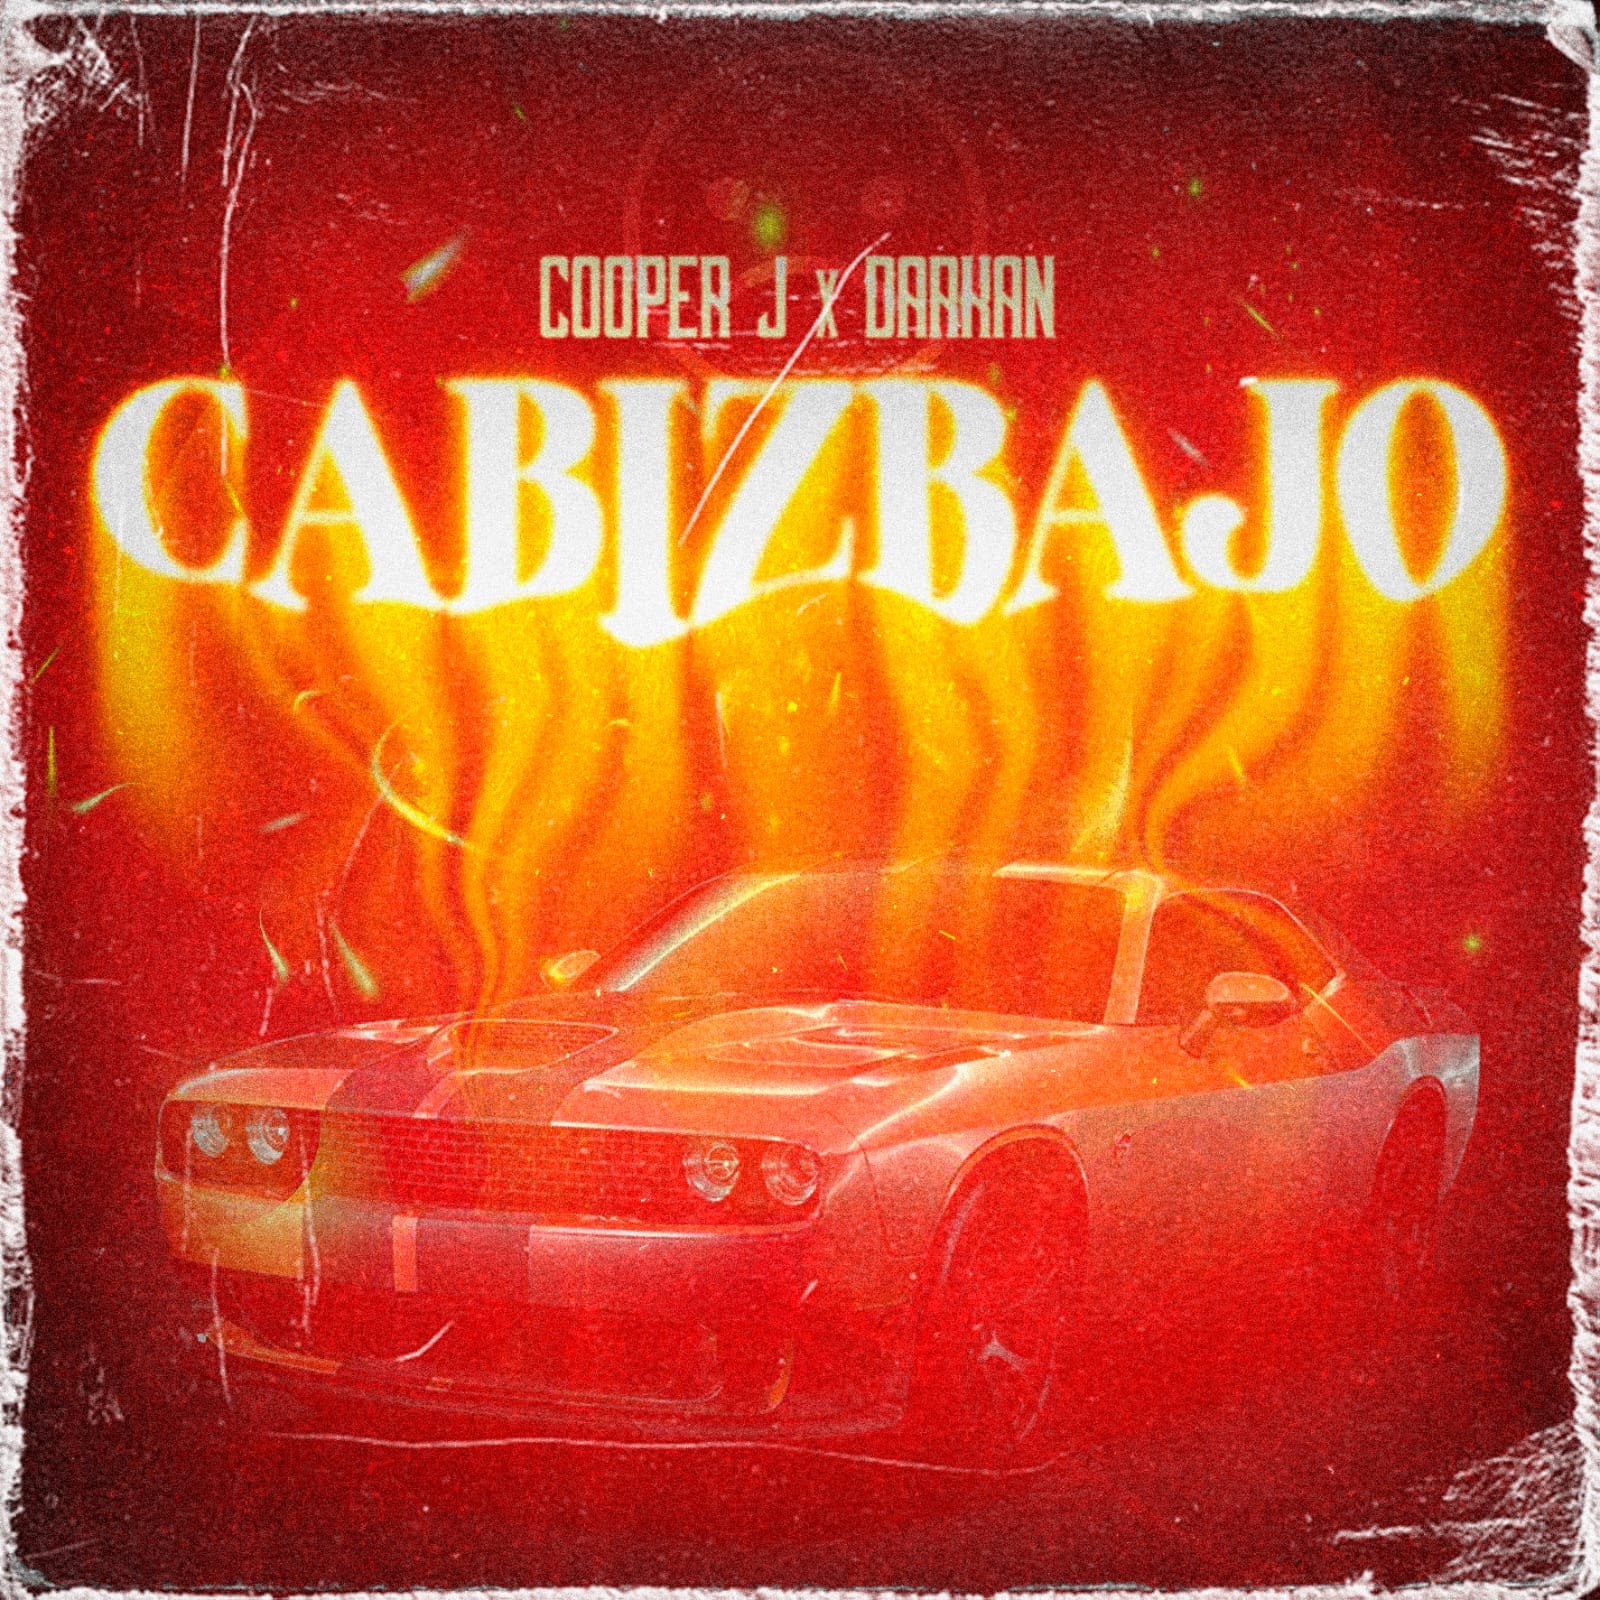 El artista colombiano Darkan y el mexicano Cooper J. fusionaron su talento “Cabizbajo”